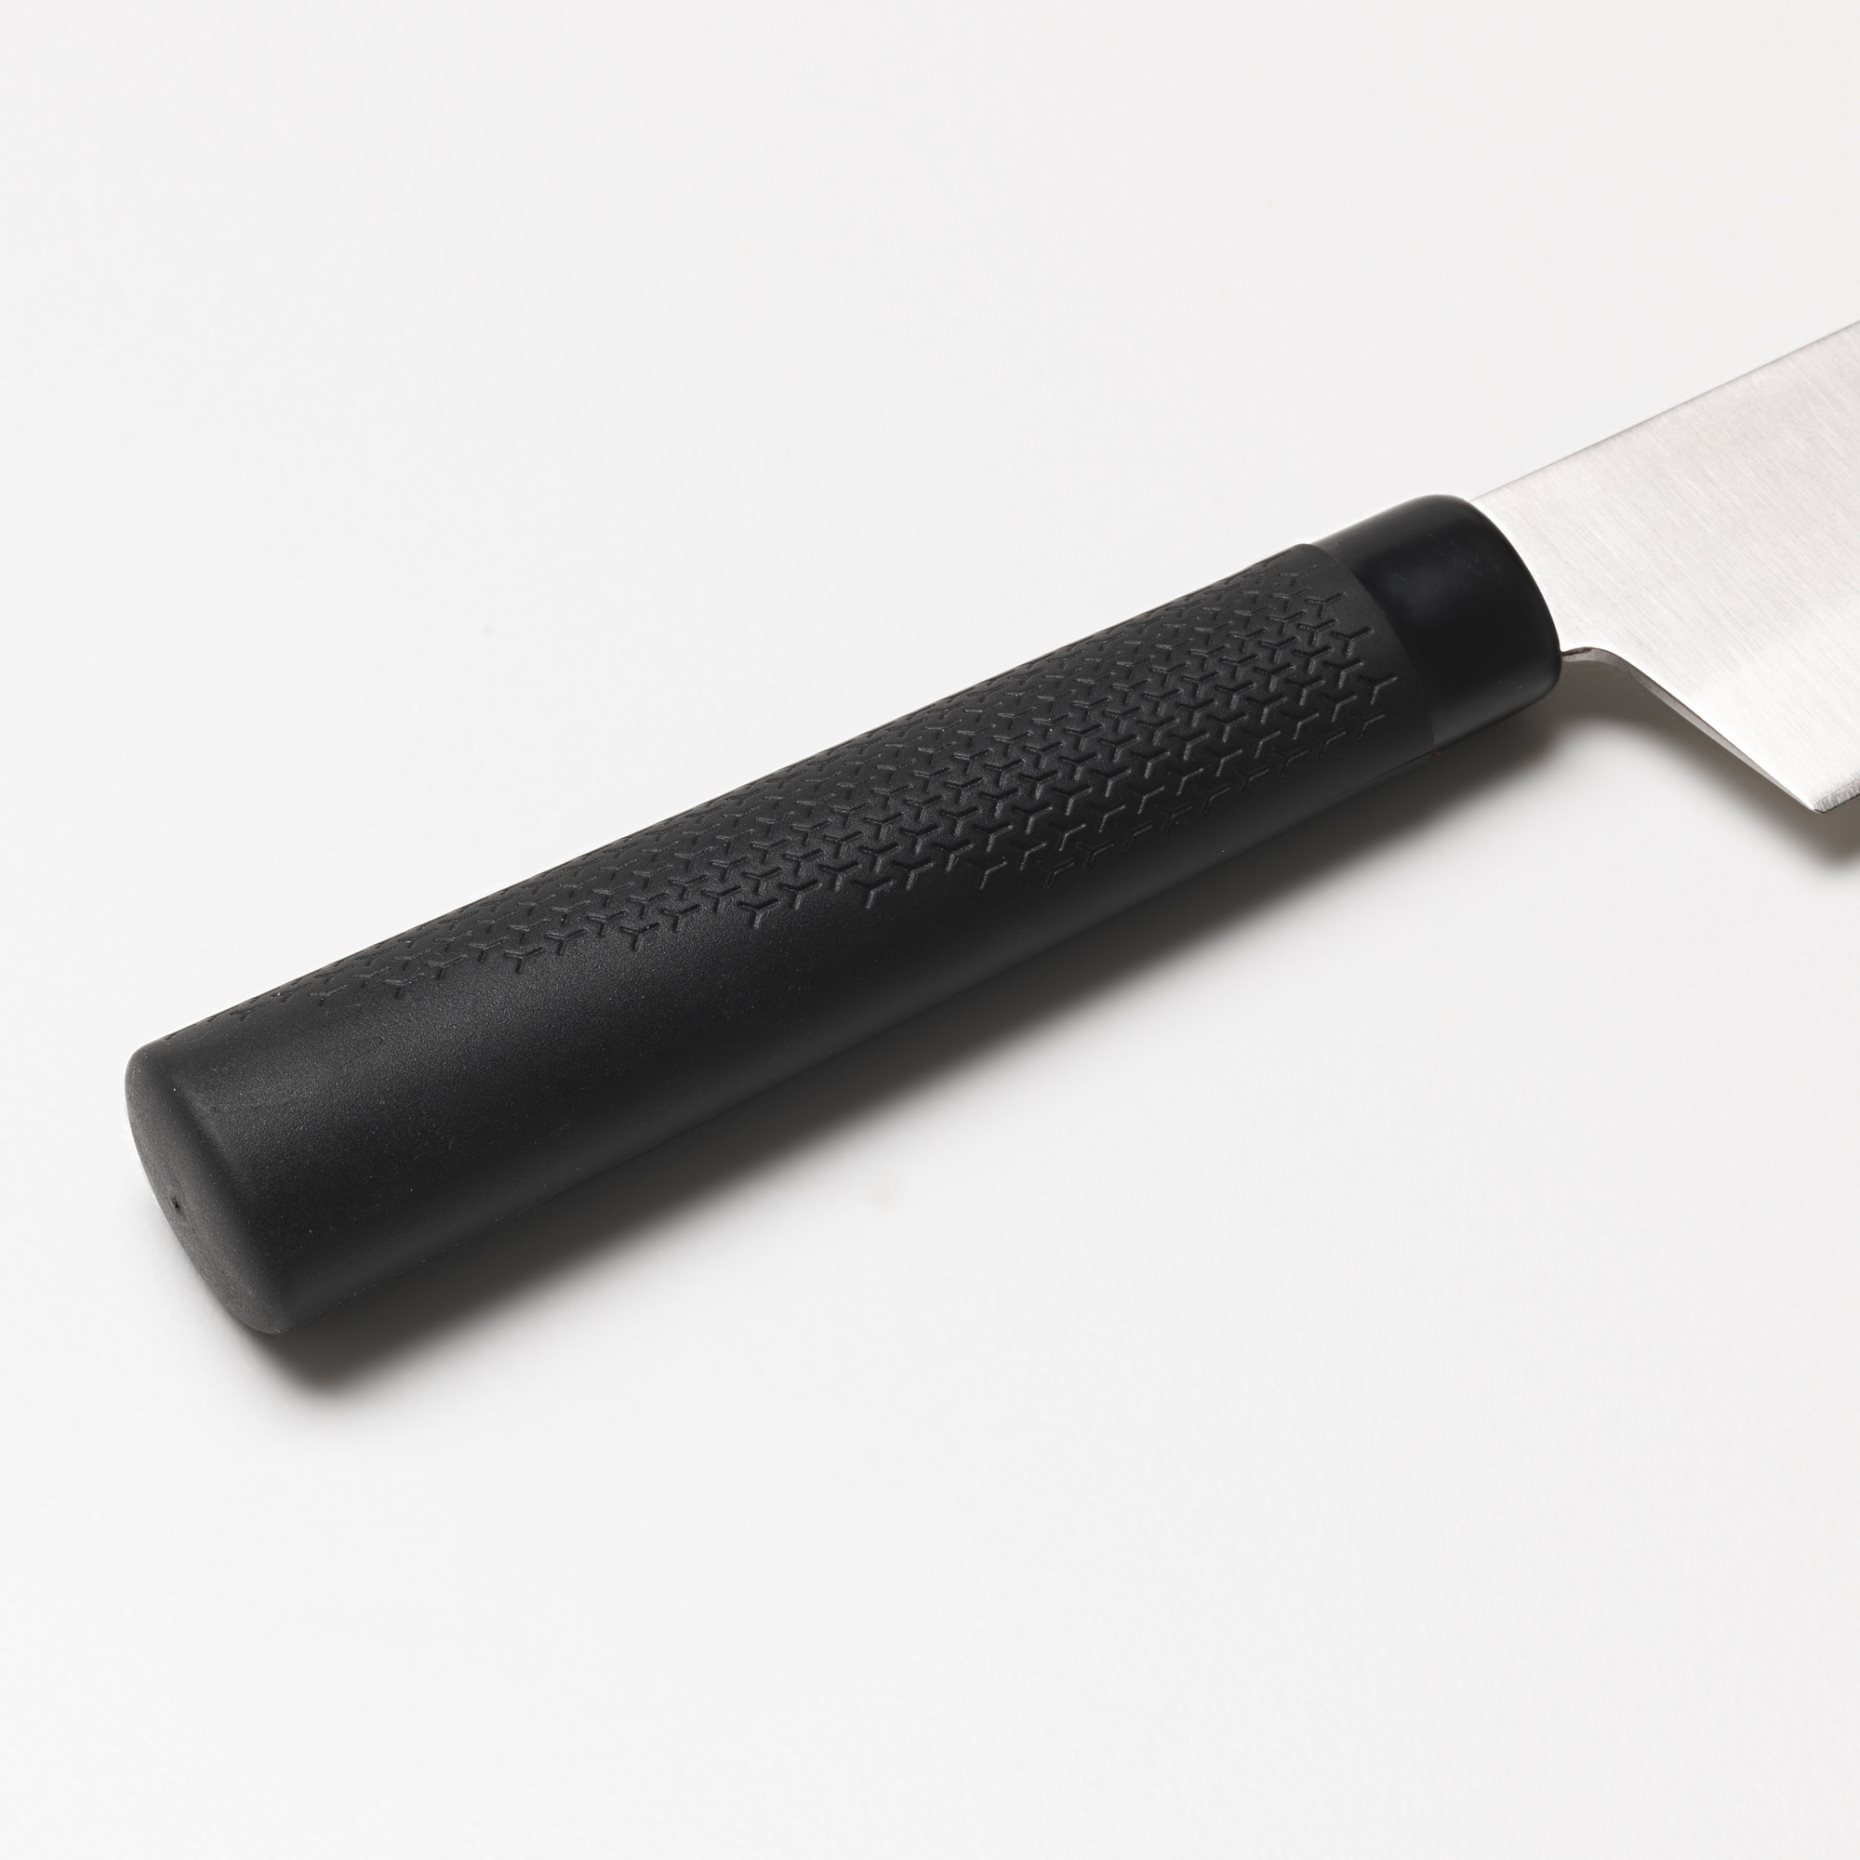 FORSLAG, 3-piece knife set, 503.468.29